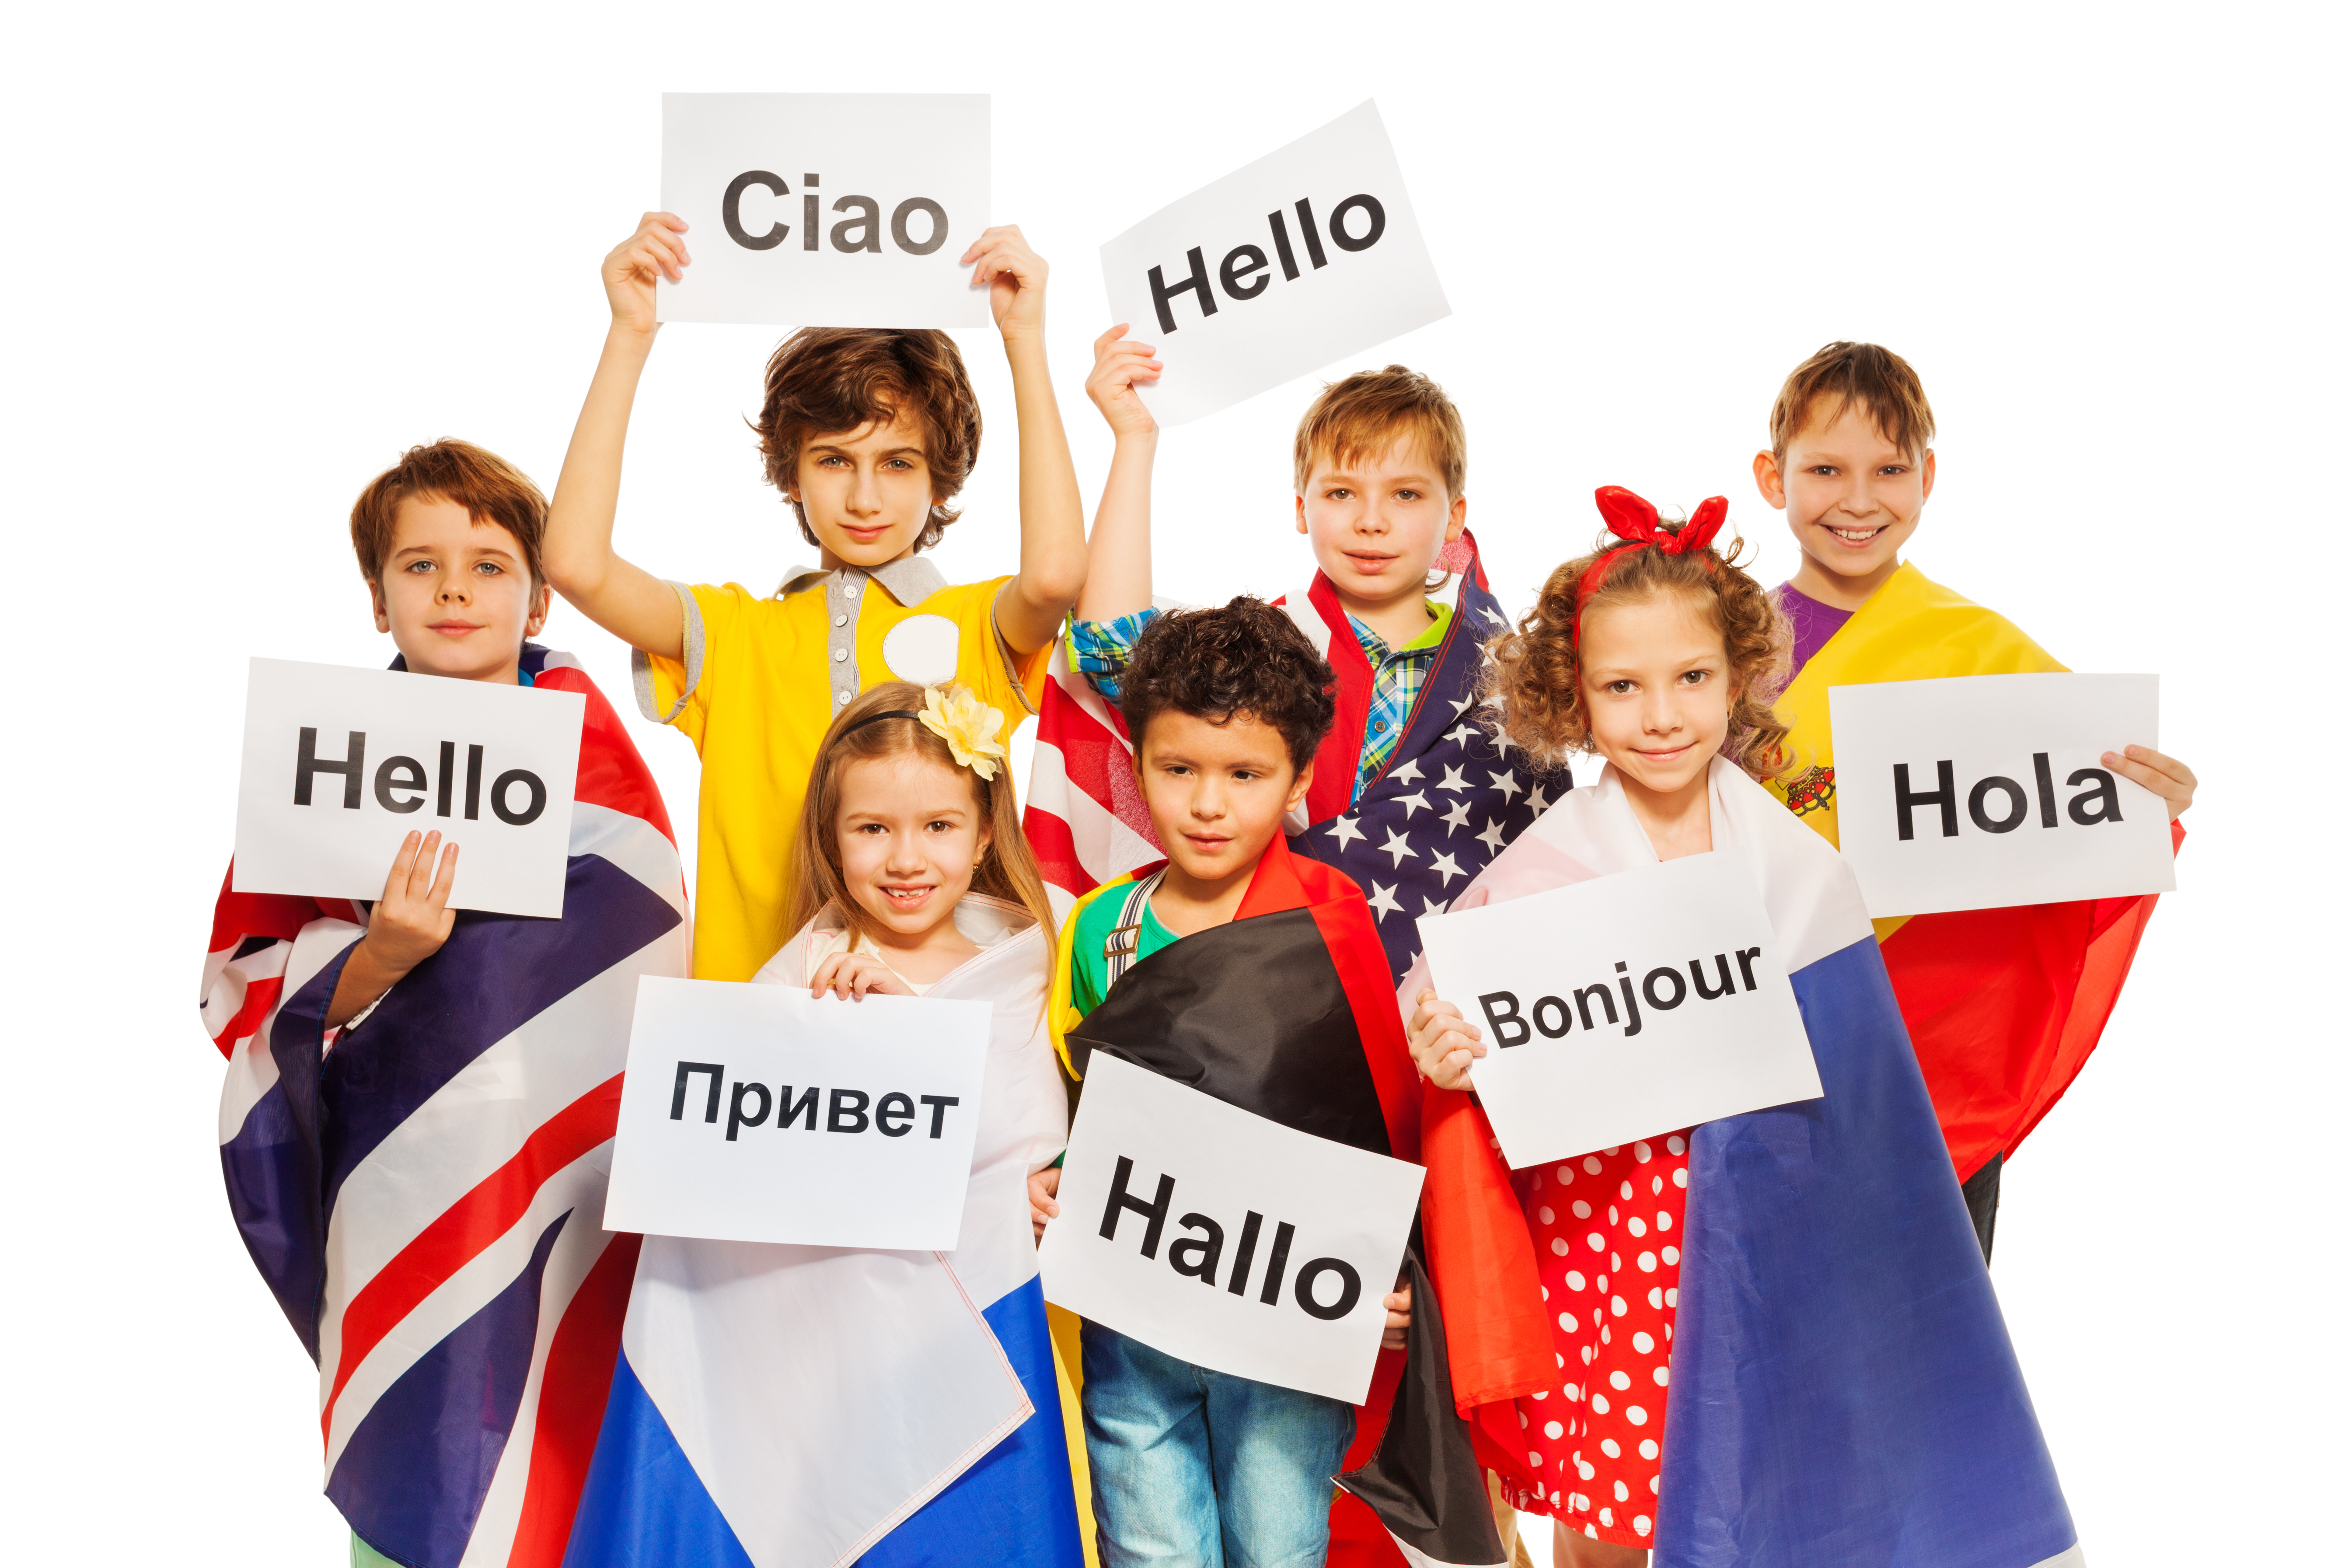 Иностранные языки. Изучение иностранного языка. Иностранные языки для детей. Изучение языков.